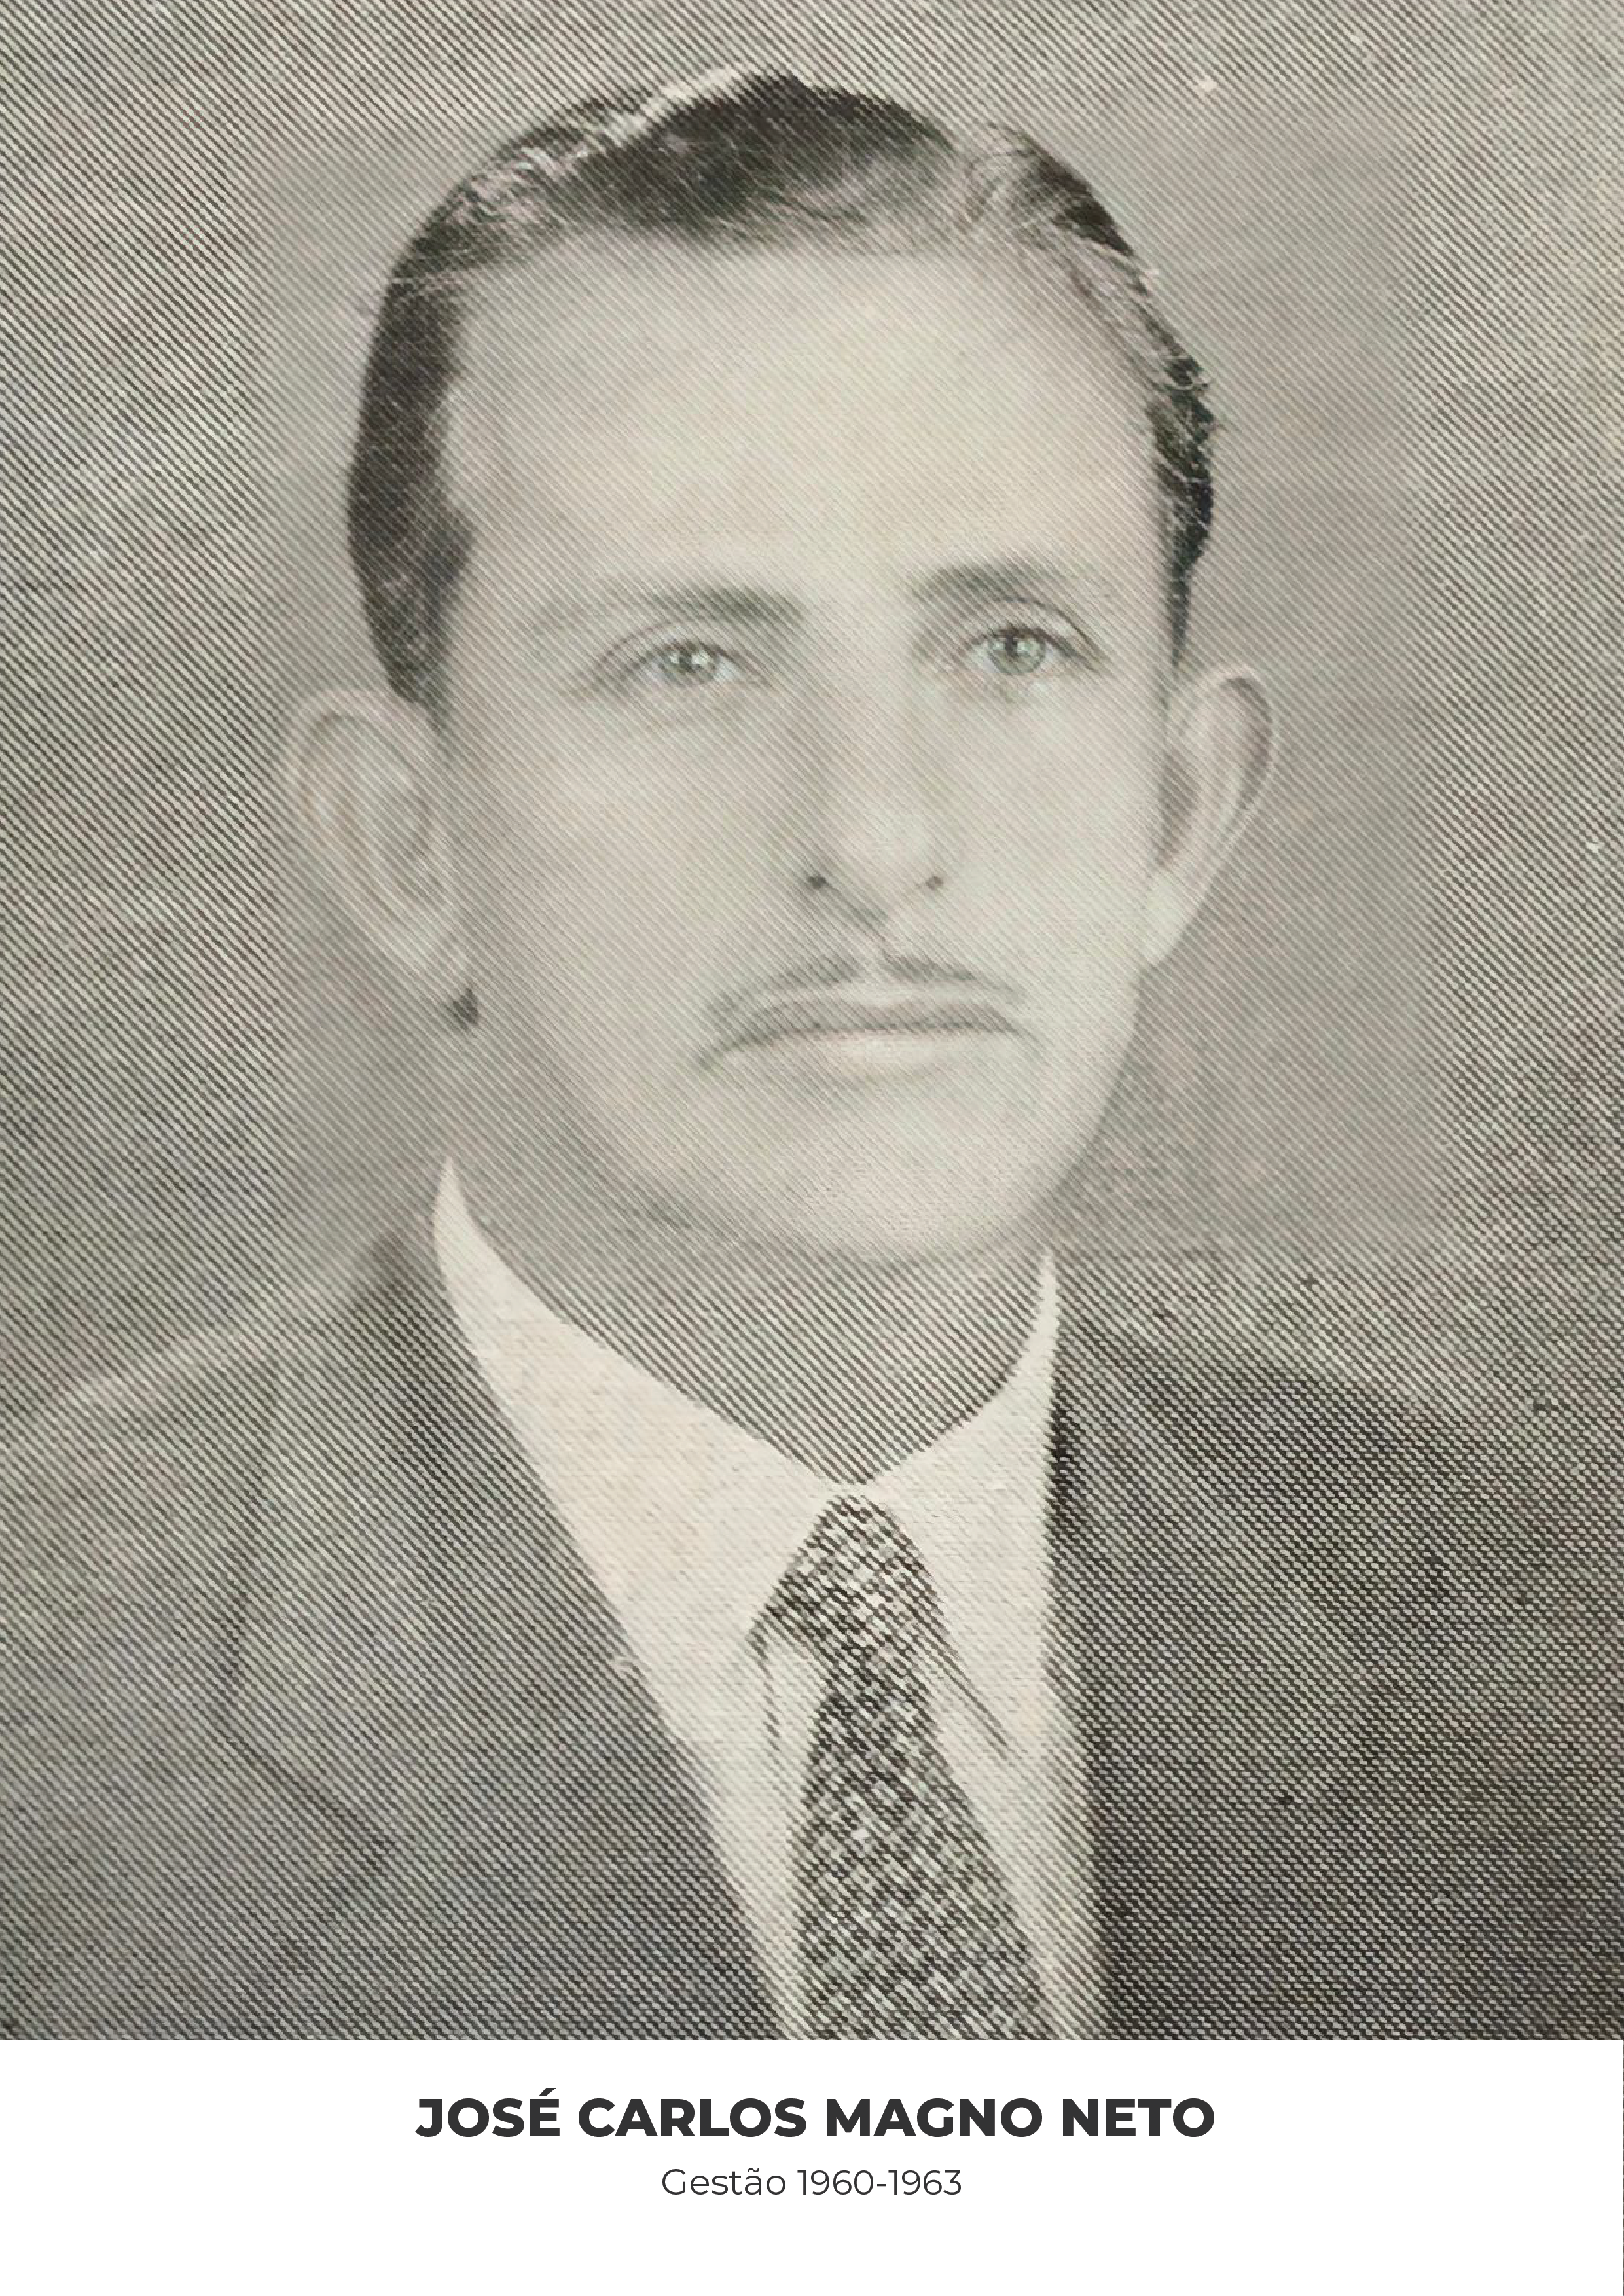 José Carlos Magno Neto